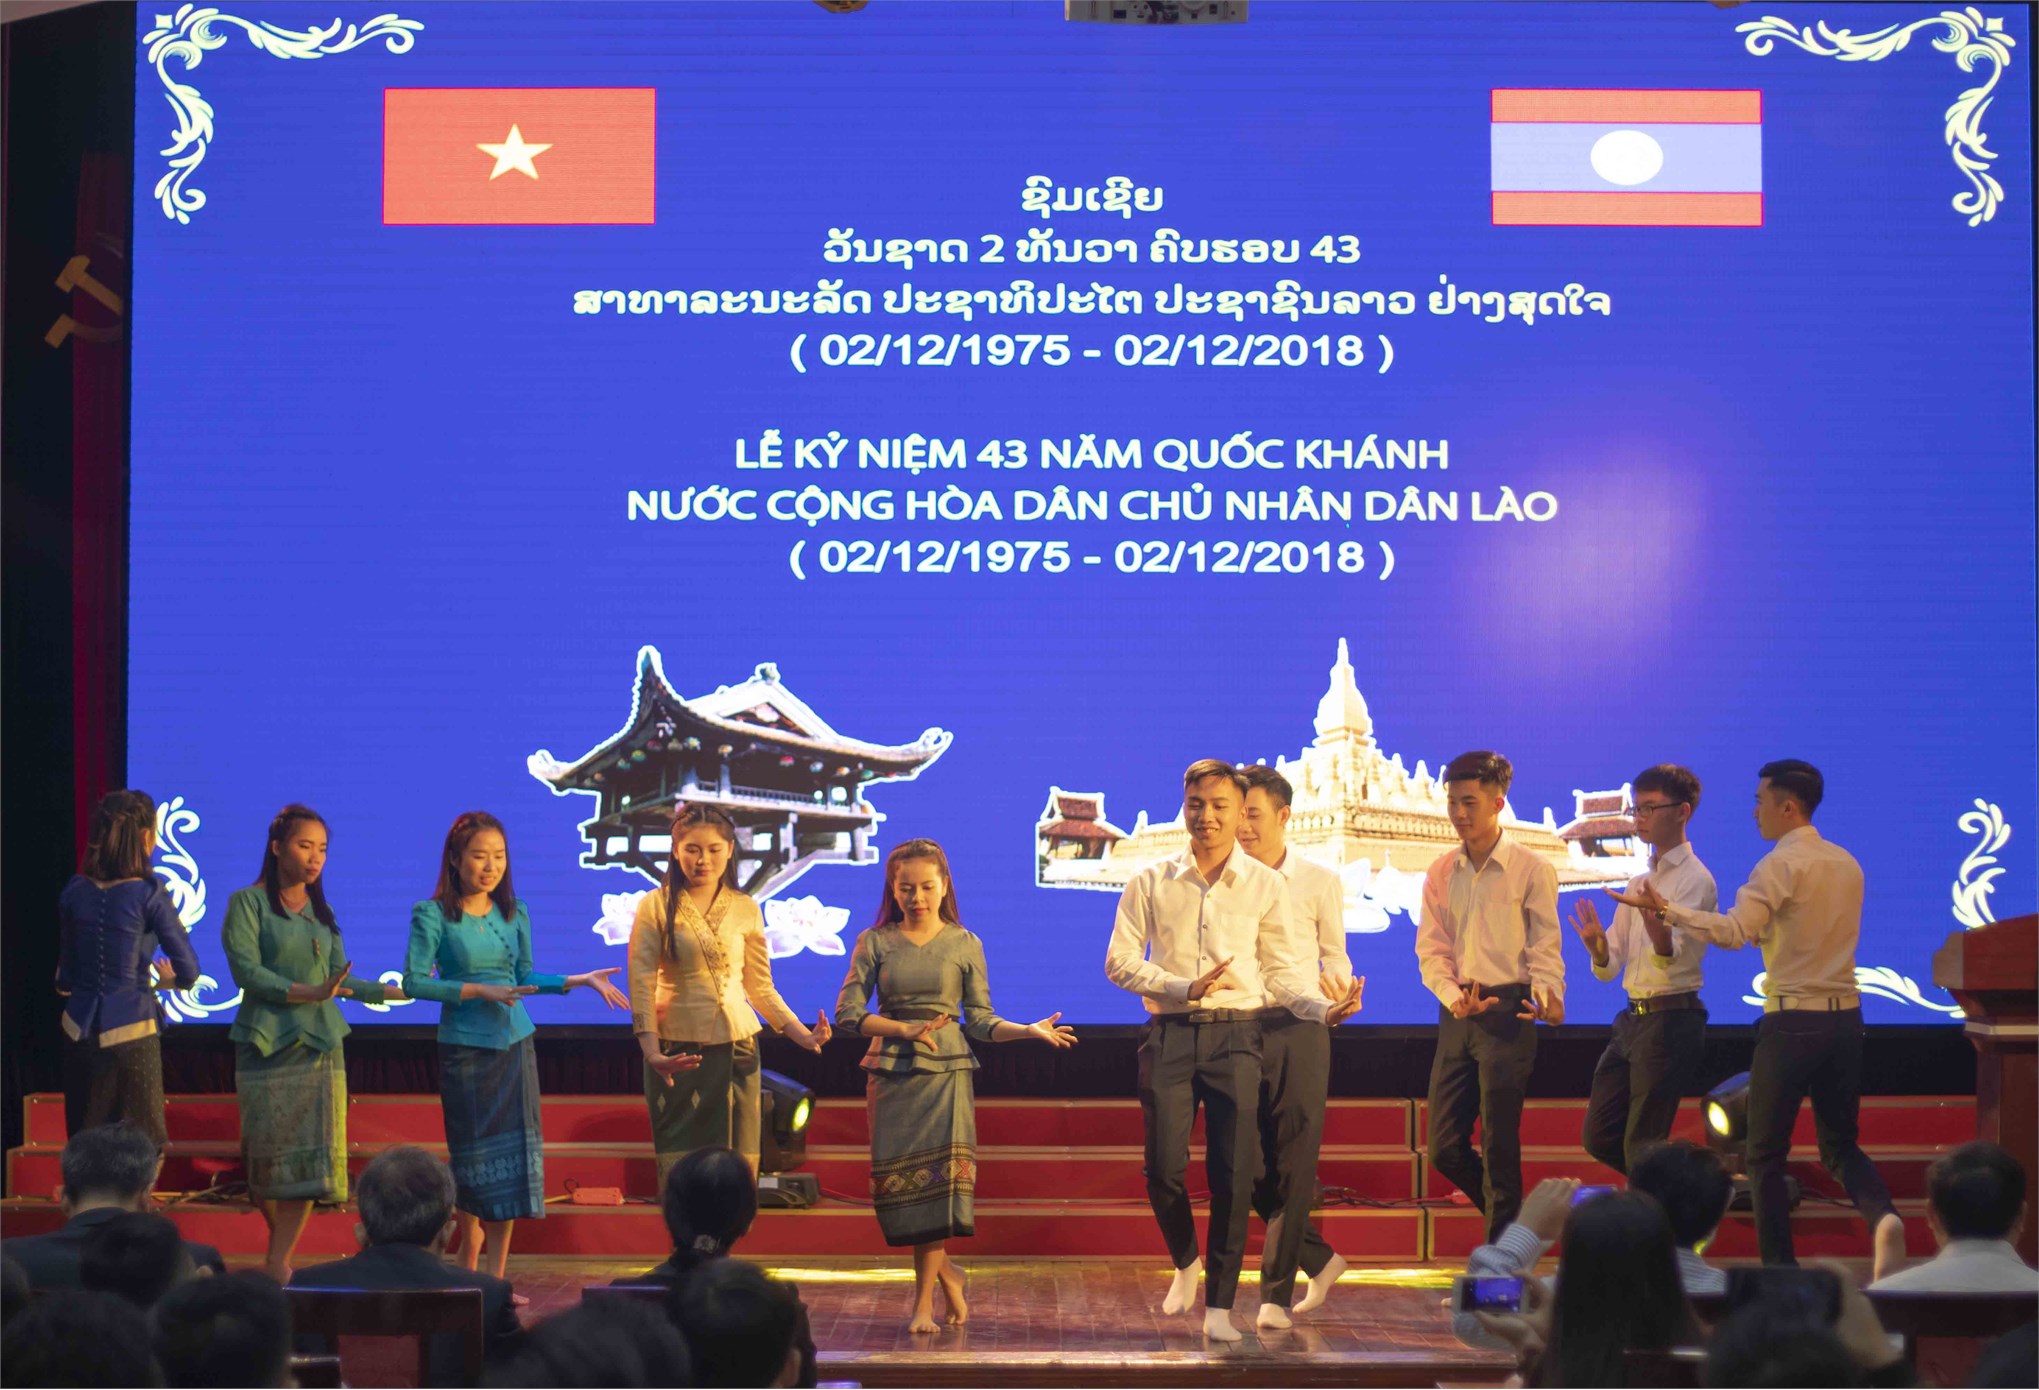 Gặp mặt Lưu học sinh Lào nhân kỷ niệm 43 năm Quốc khánh nước CHDCND Lào